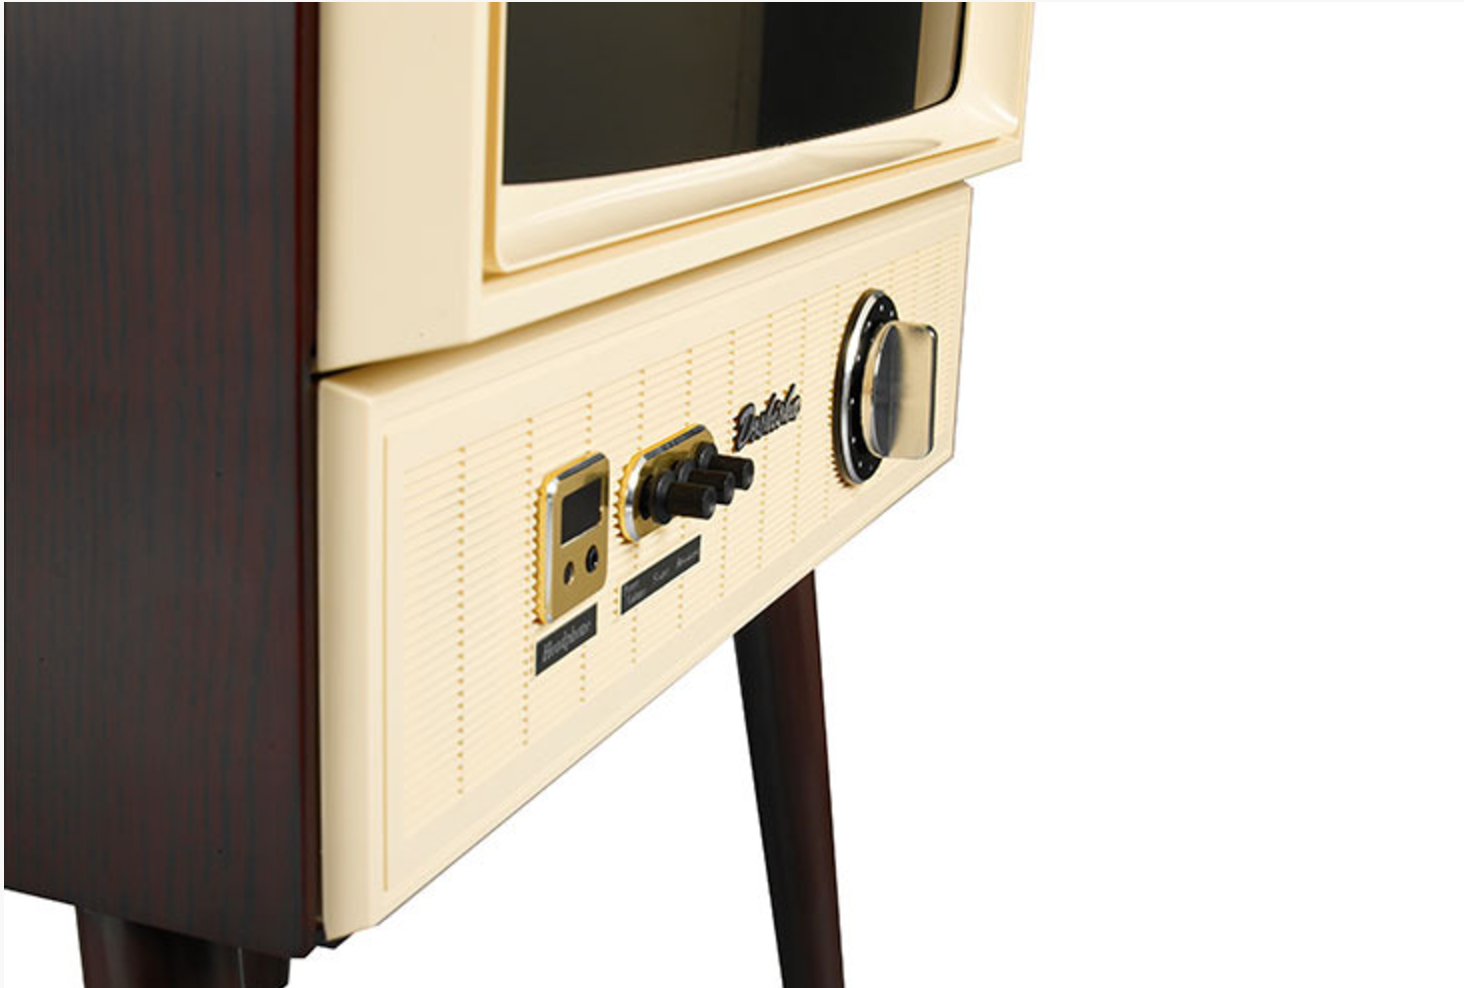 レトロテイストな20型液晶テレビ「VT203-BR」が11月中旬発売。なん 